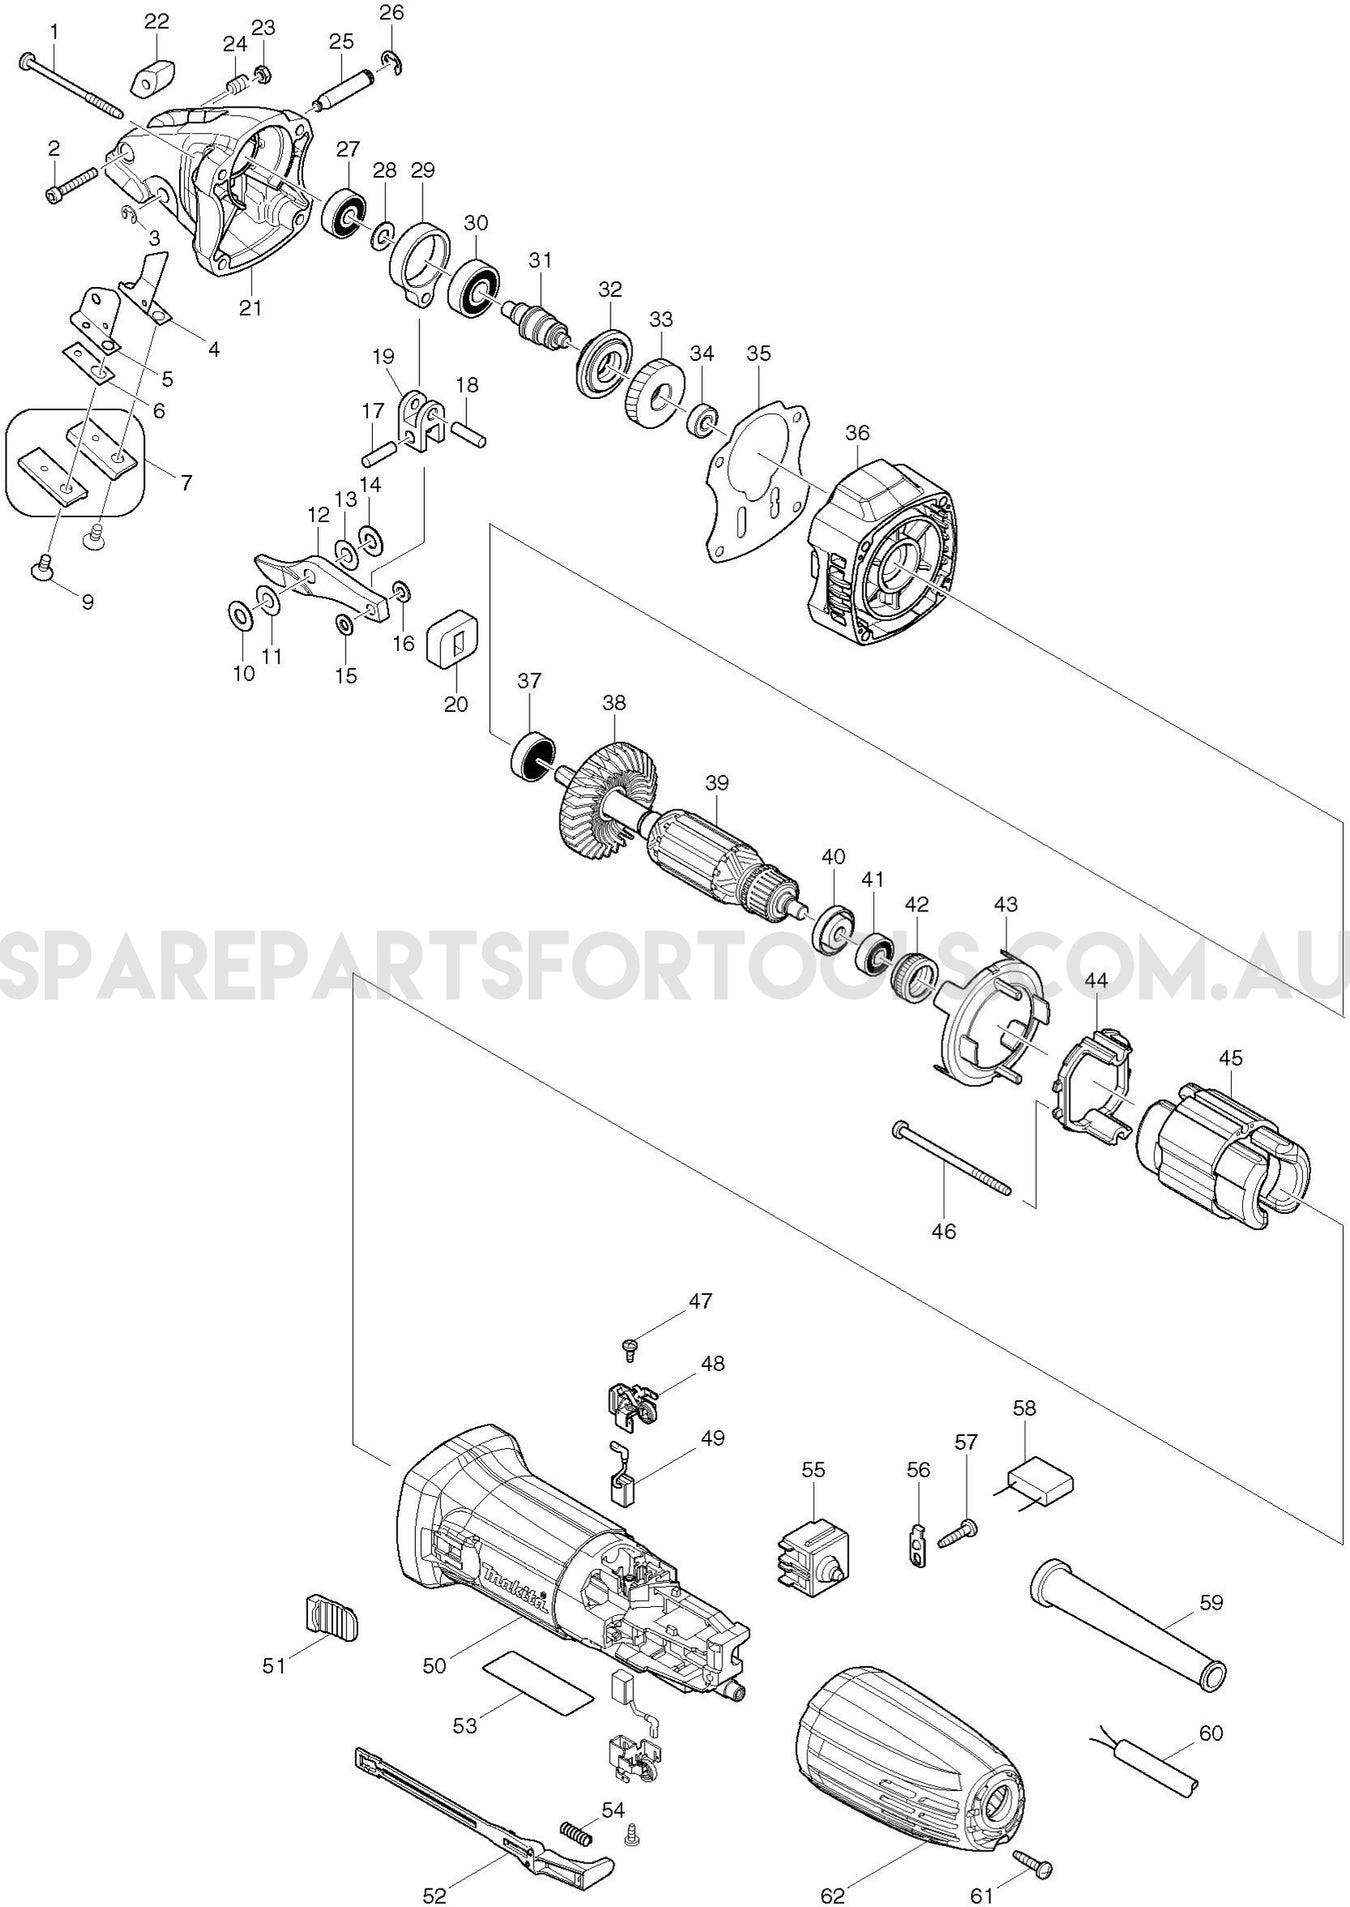 Makita JS1601 Spare Parts